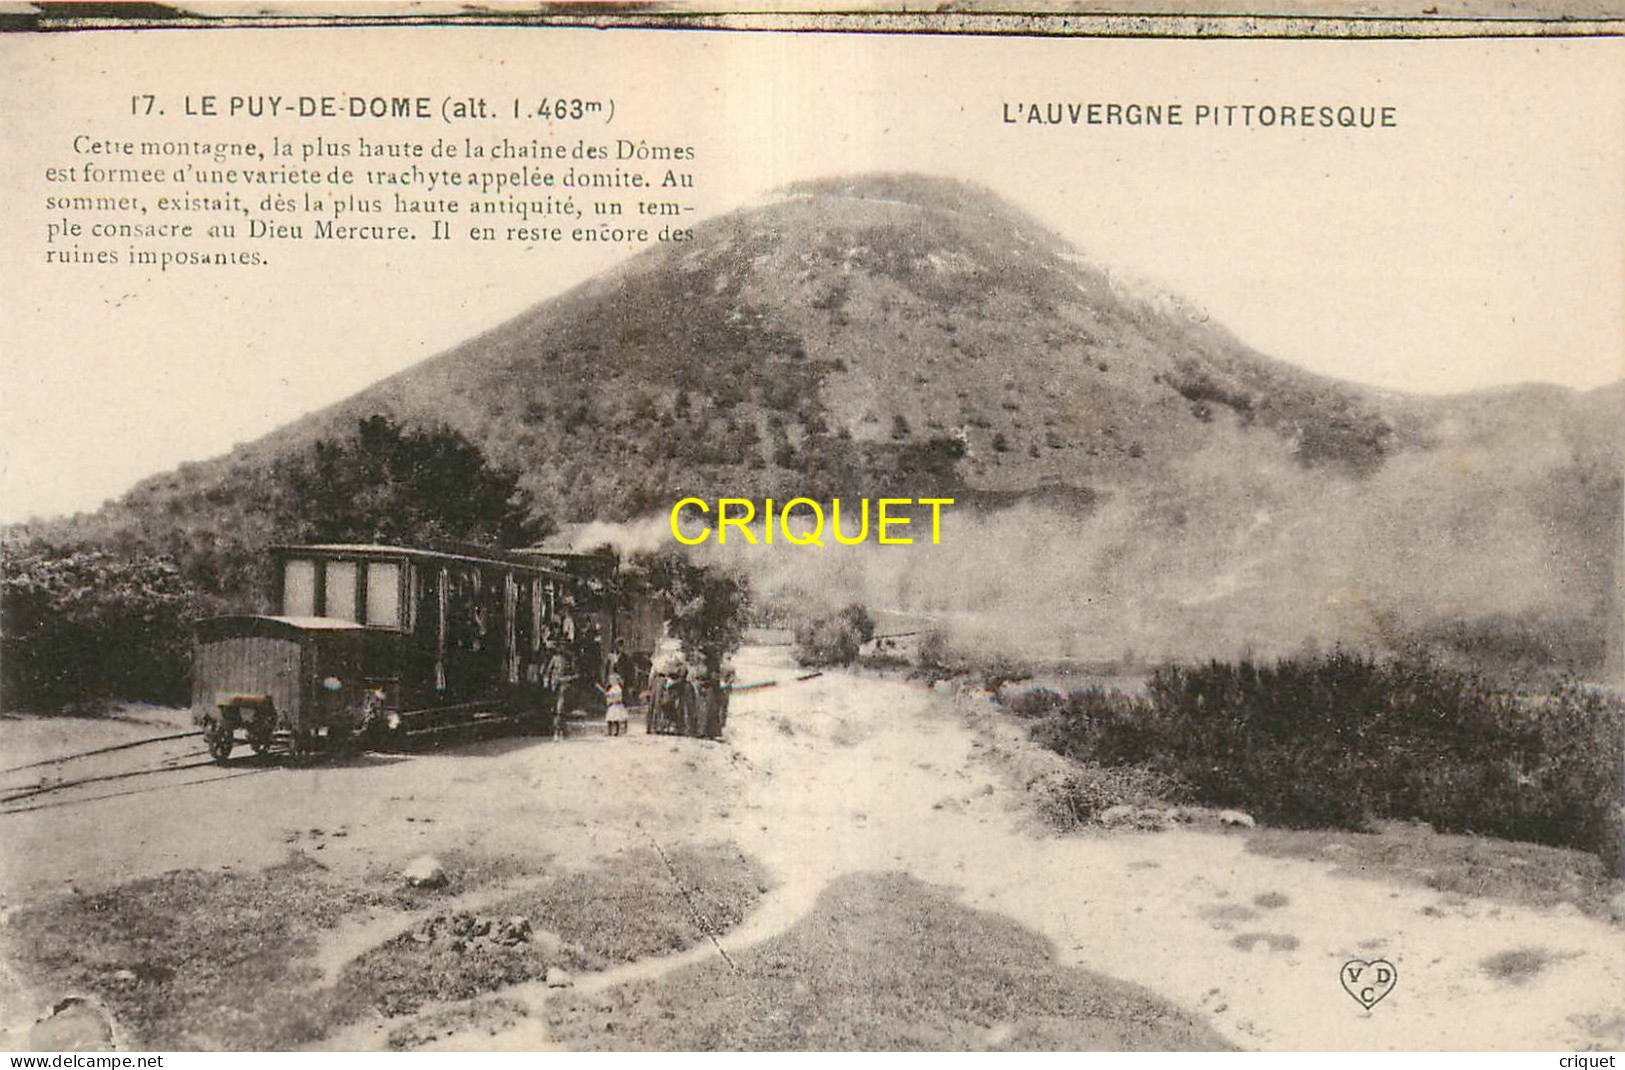 63 Le Puy de Dôme, beau lot de 8 cartes différentes sur le tramway et le chemin de fer